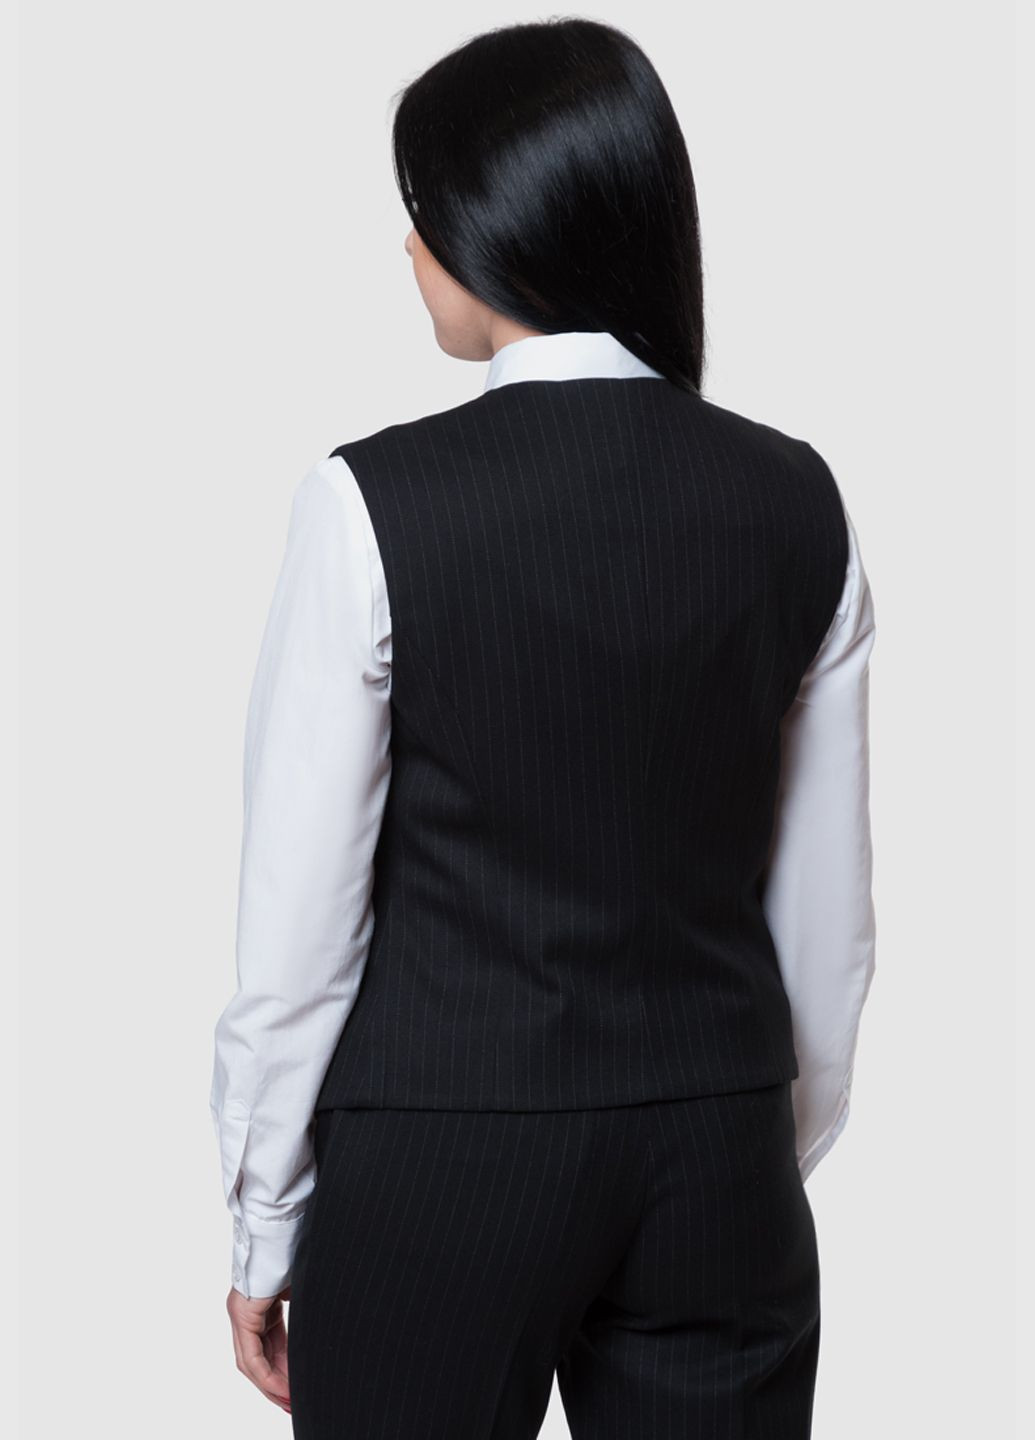 Жилет жіночий Arber чорний Arber Woman vest classic w (282841878)